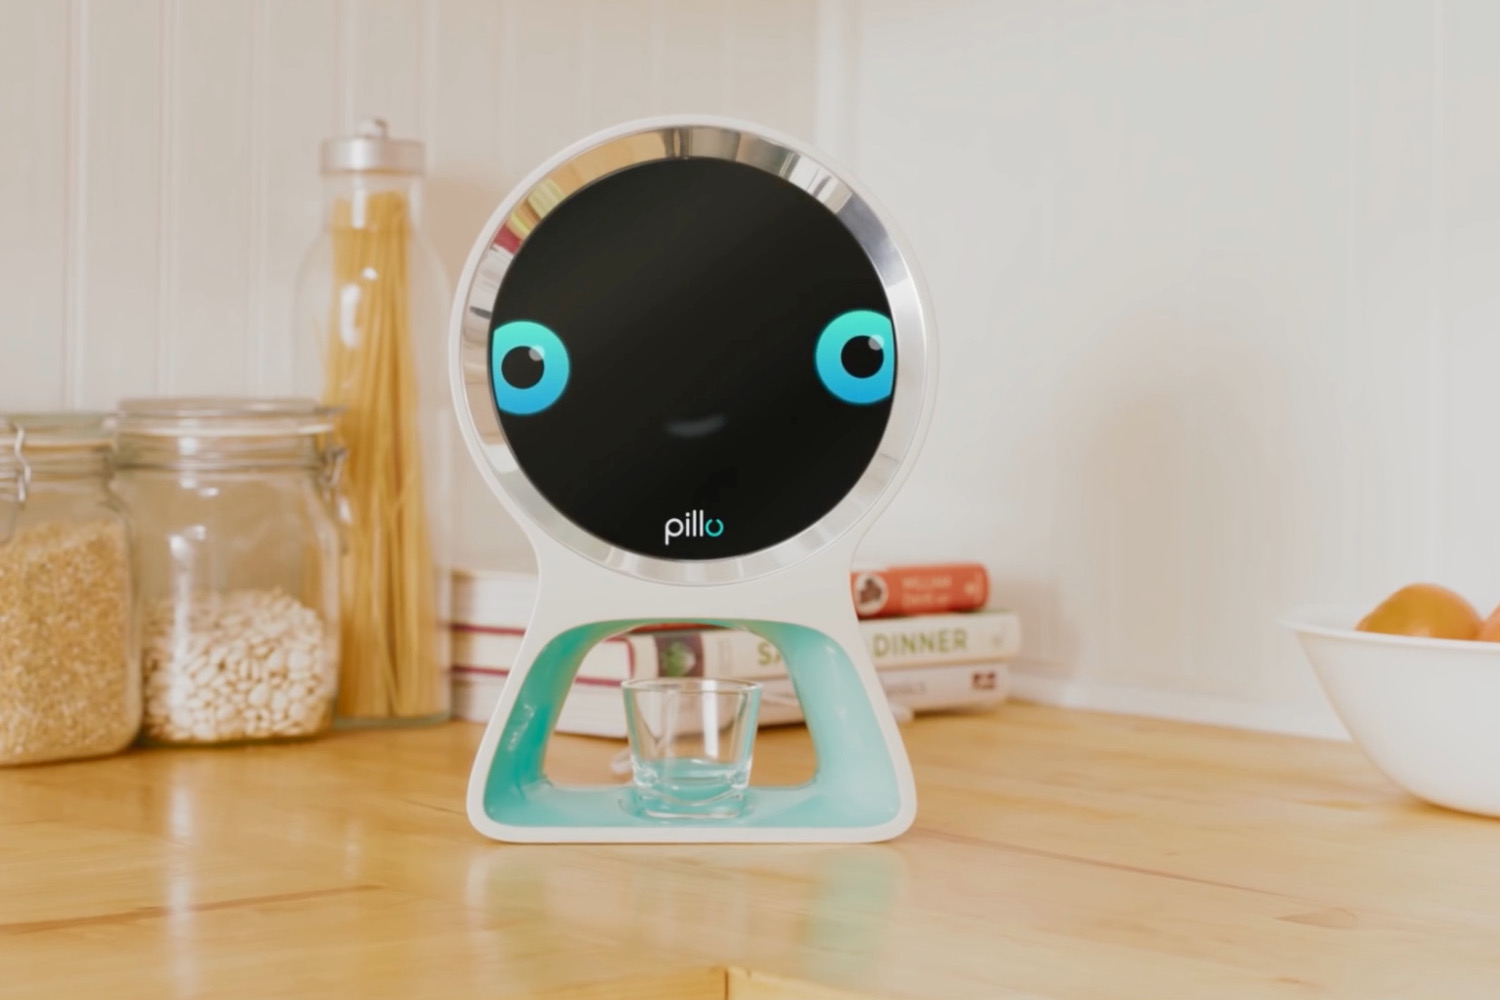 pillo home health robot